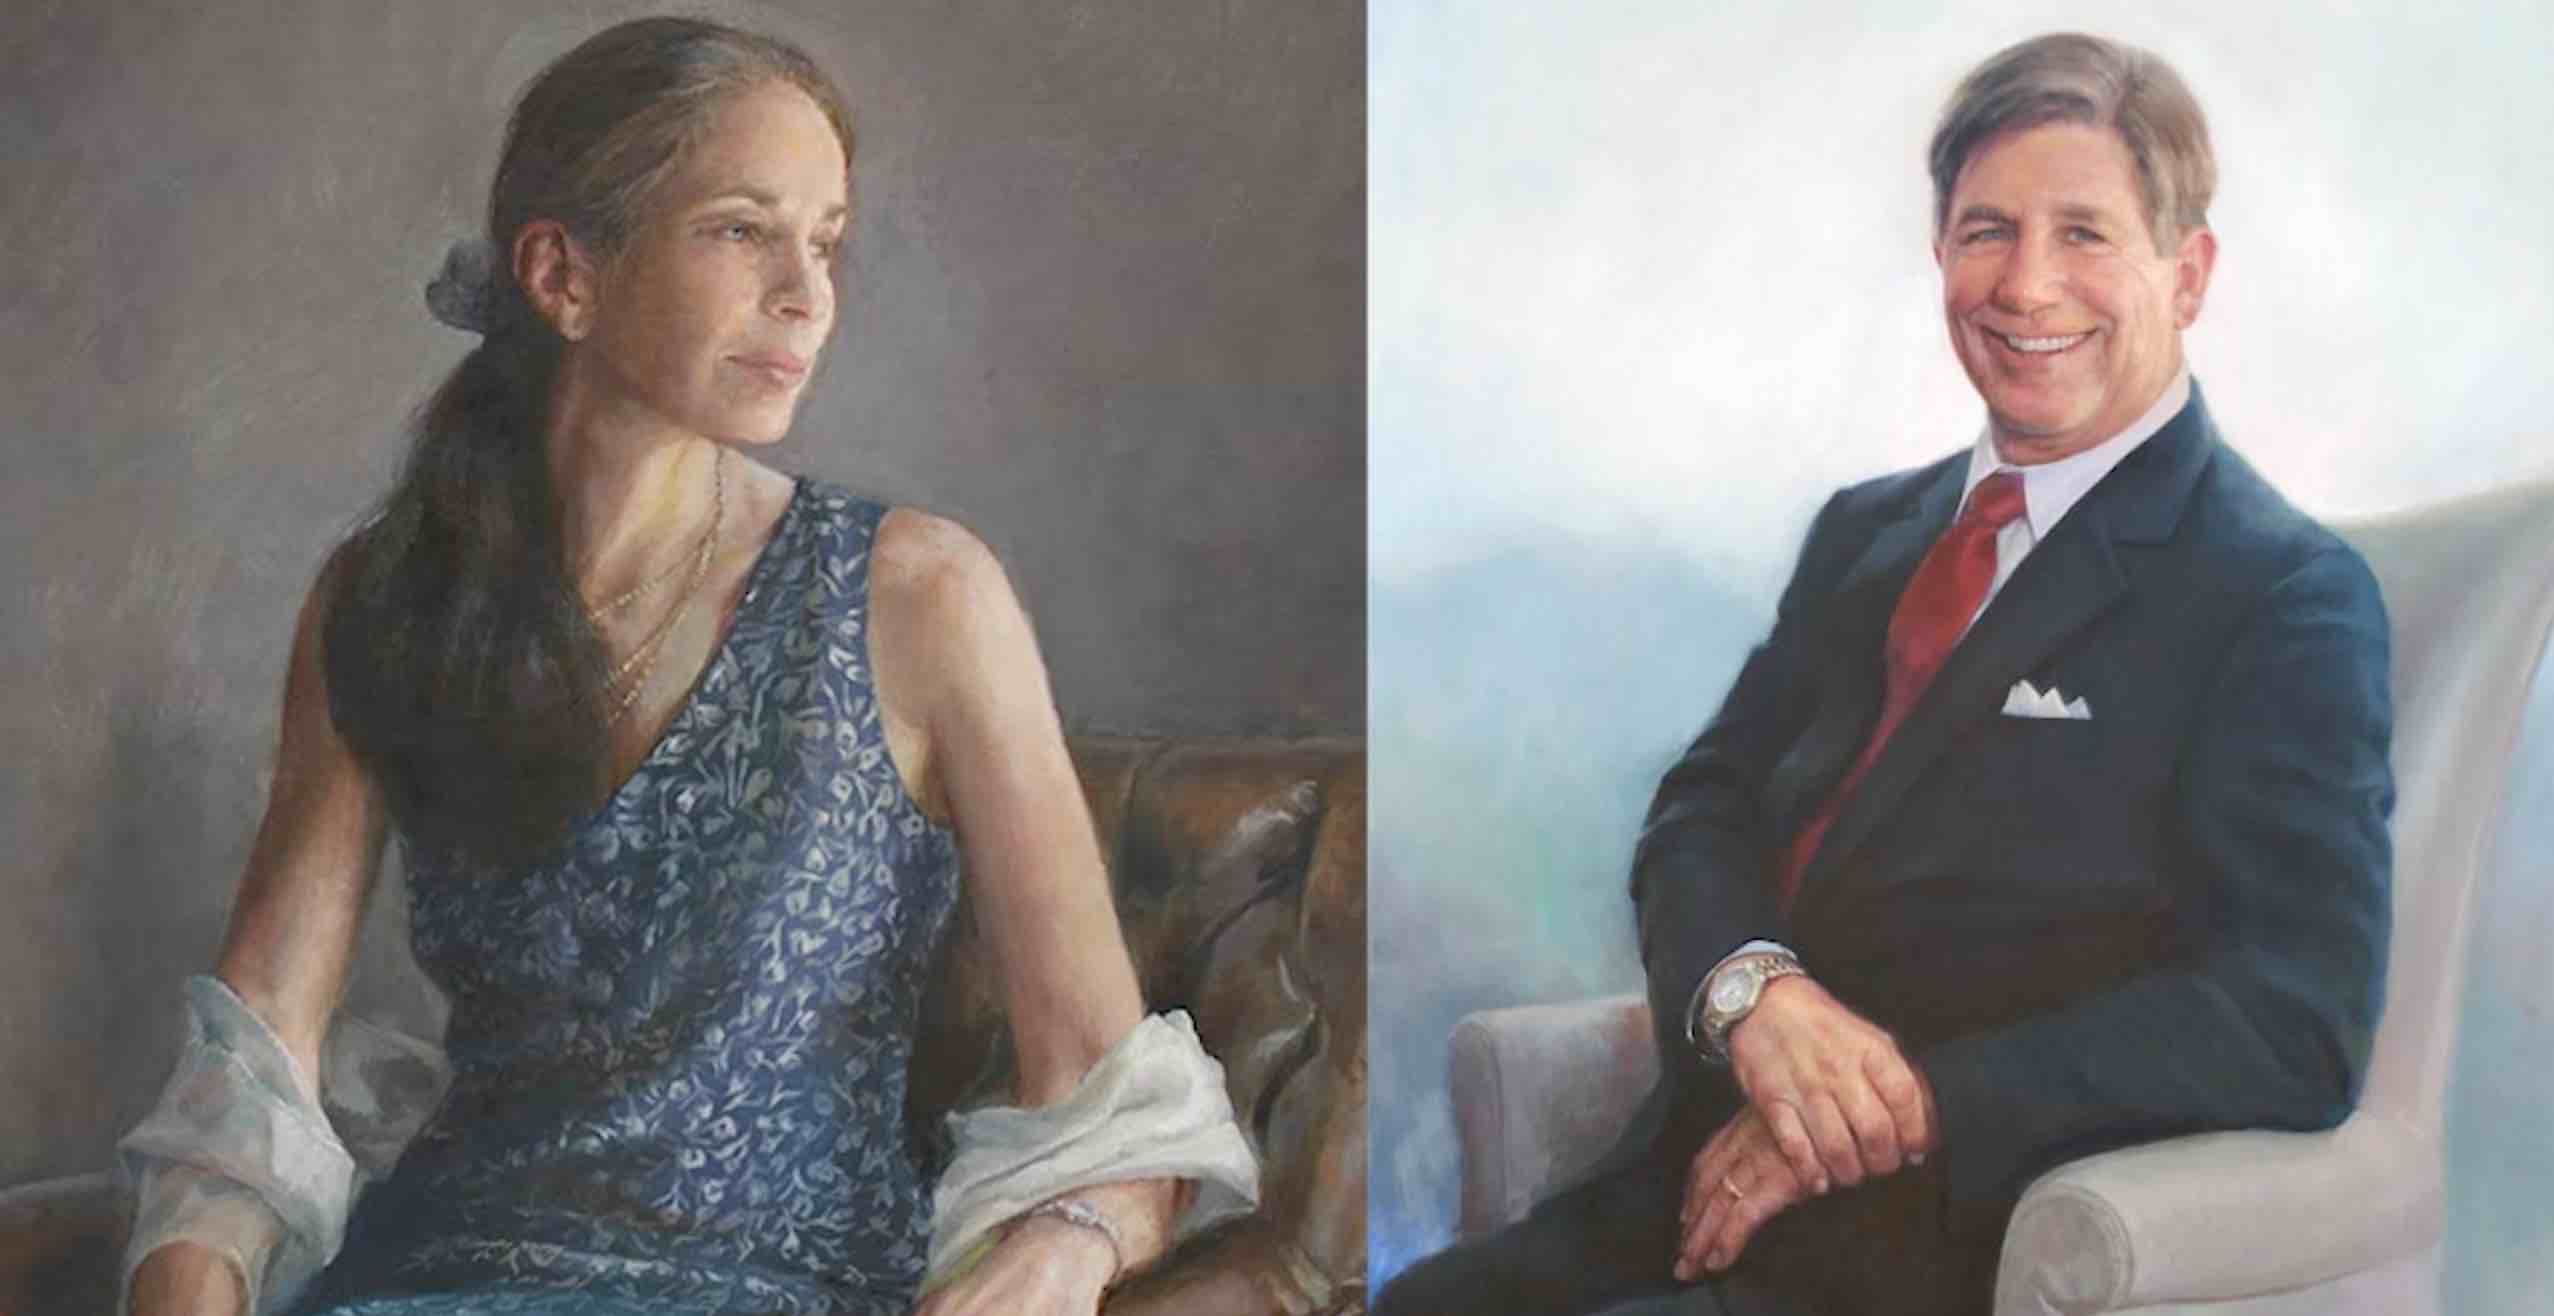 oil portrait painting detail of a woman next to an oil portrait painting detail of a man